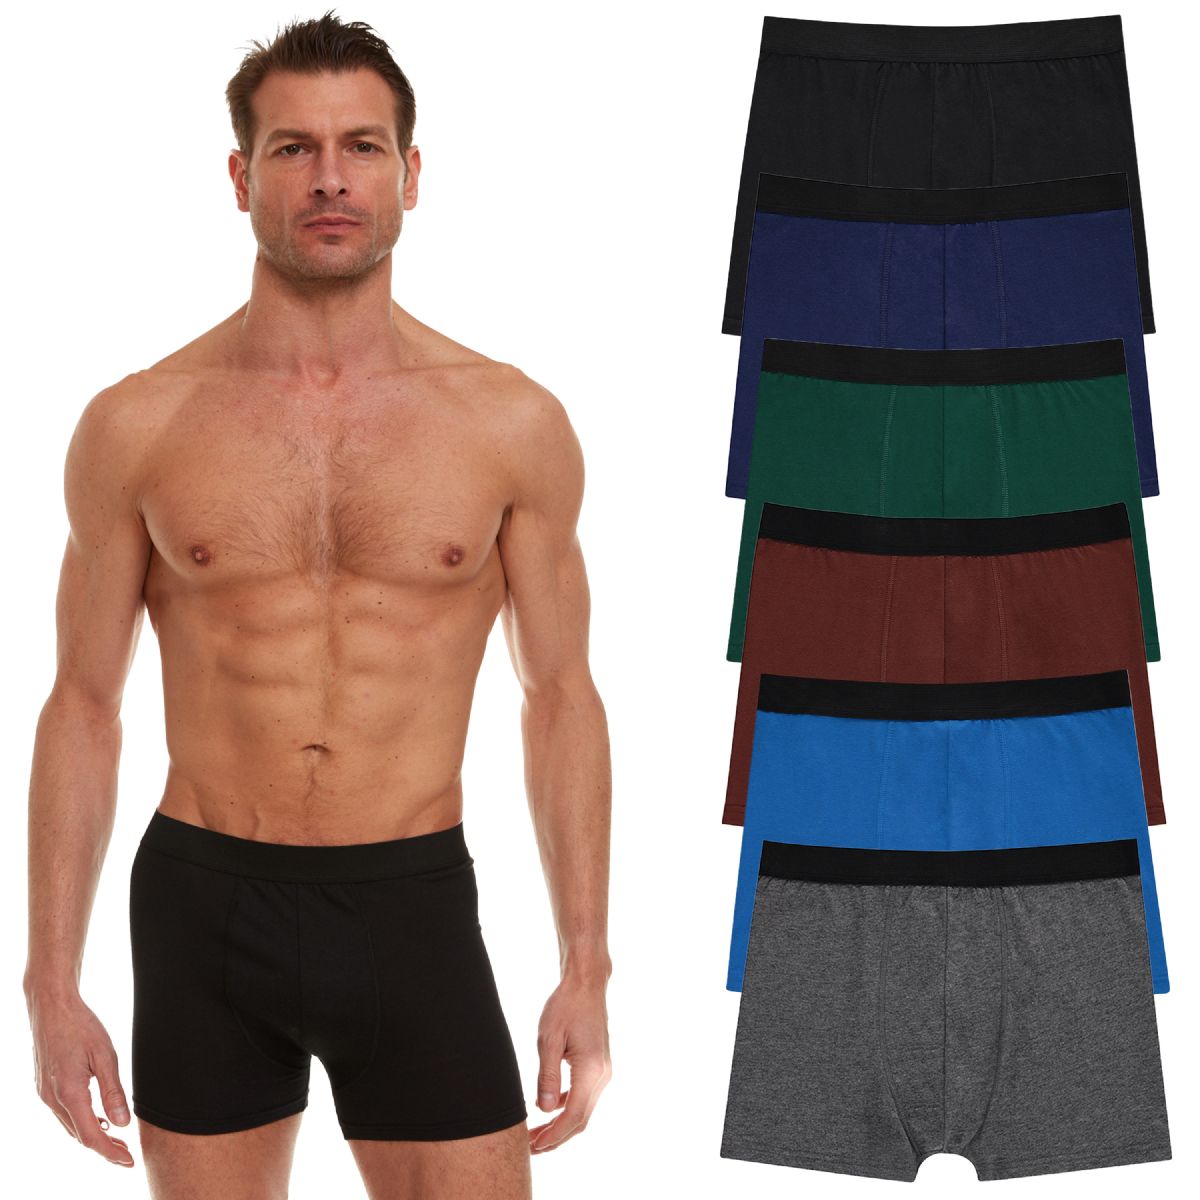 Discounted Mens Underwear  Wholesale Mens Underwear in Bulk Supplier